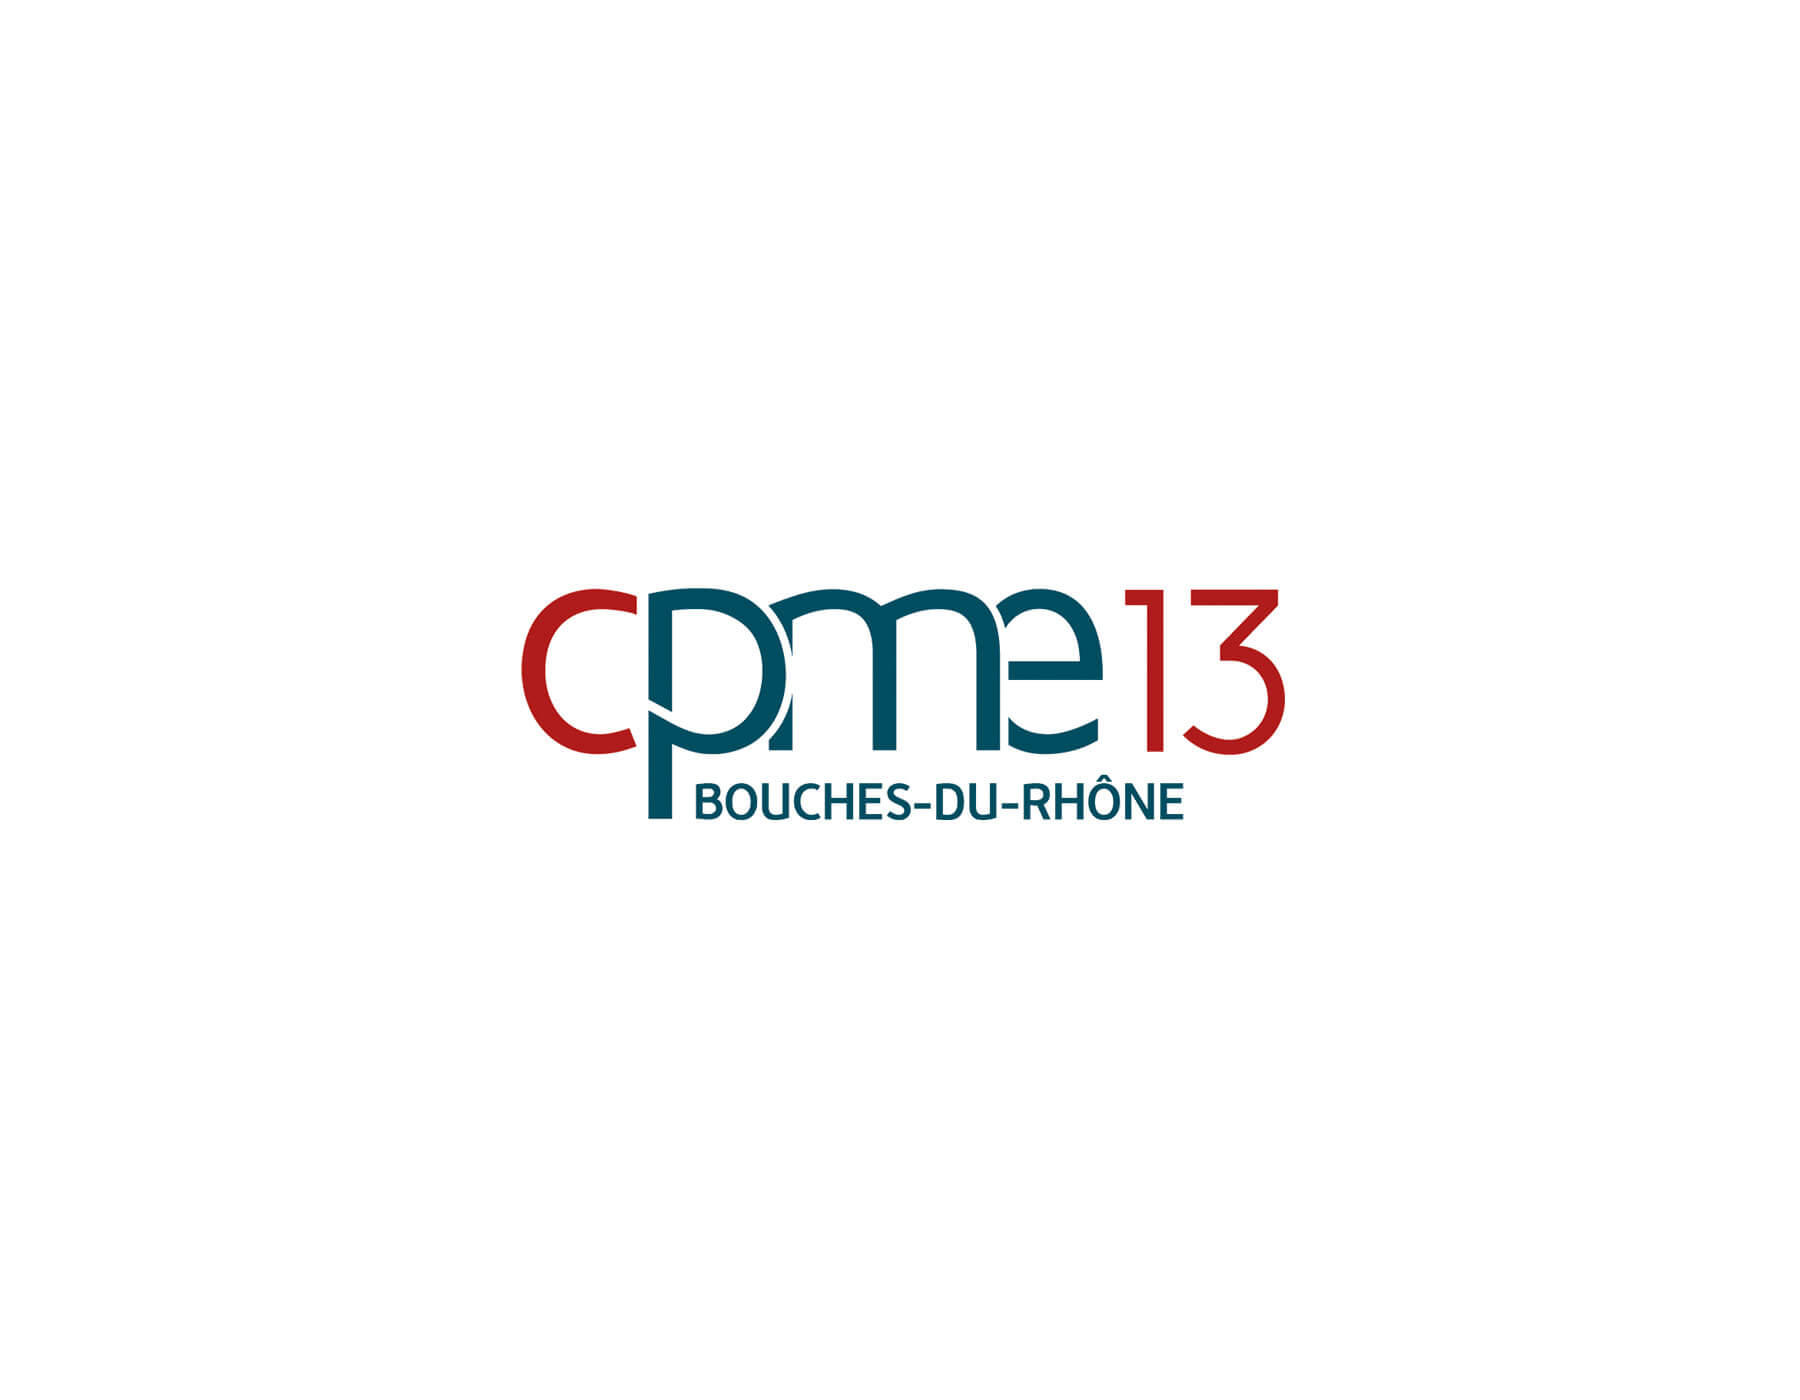 CPME 13 logo